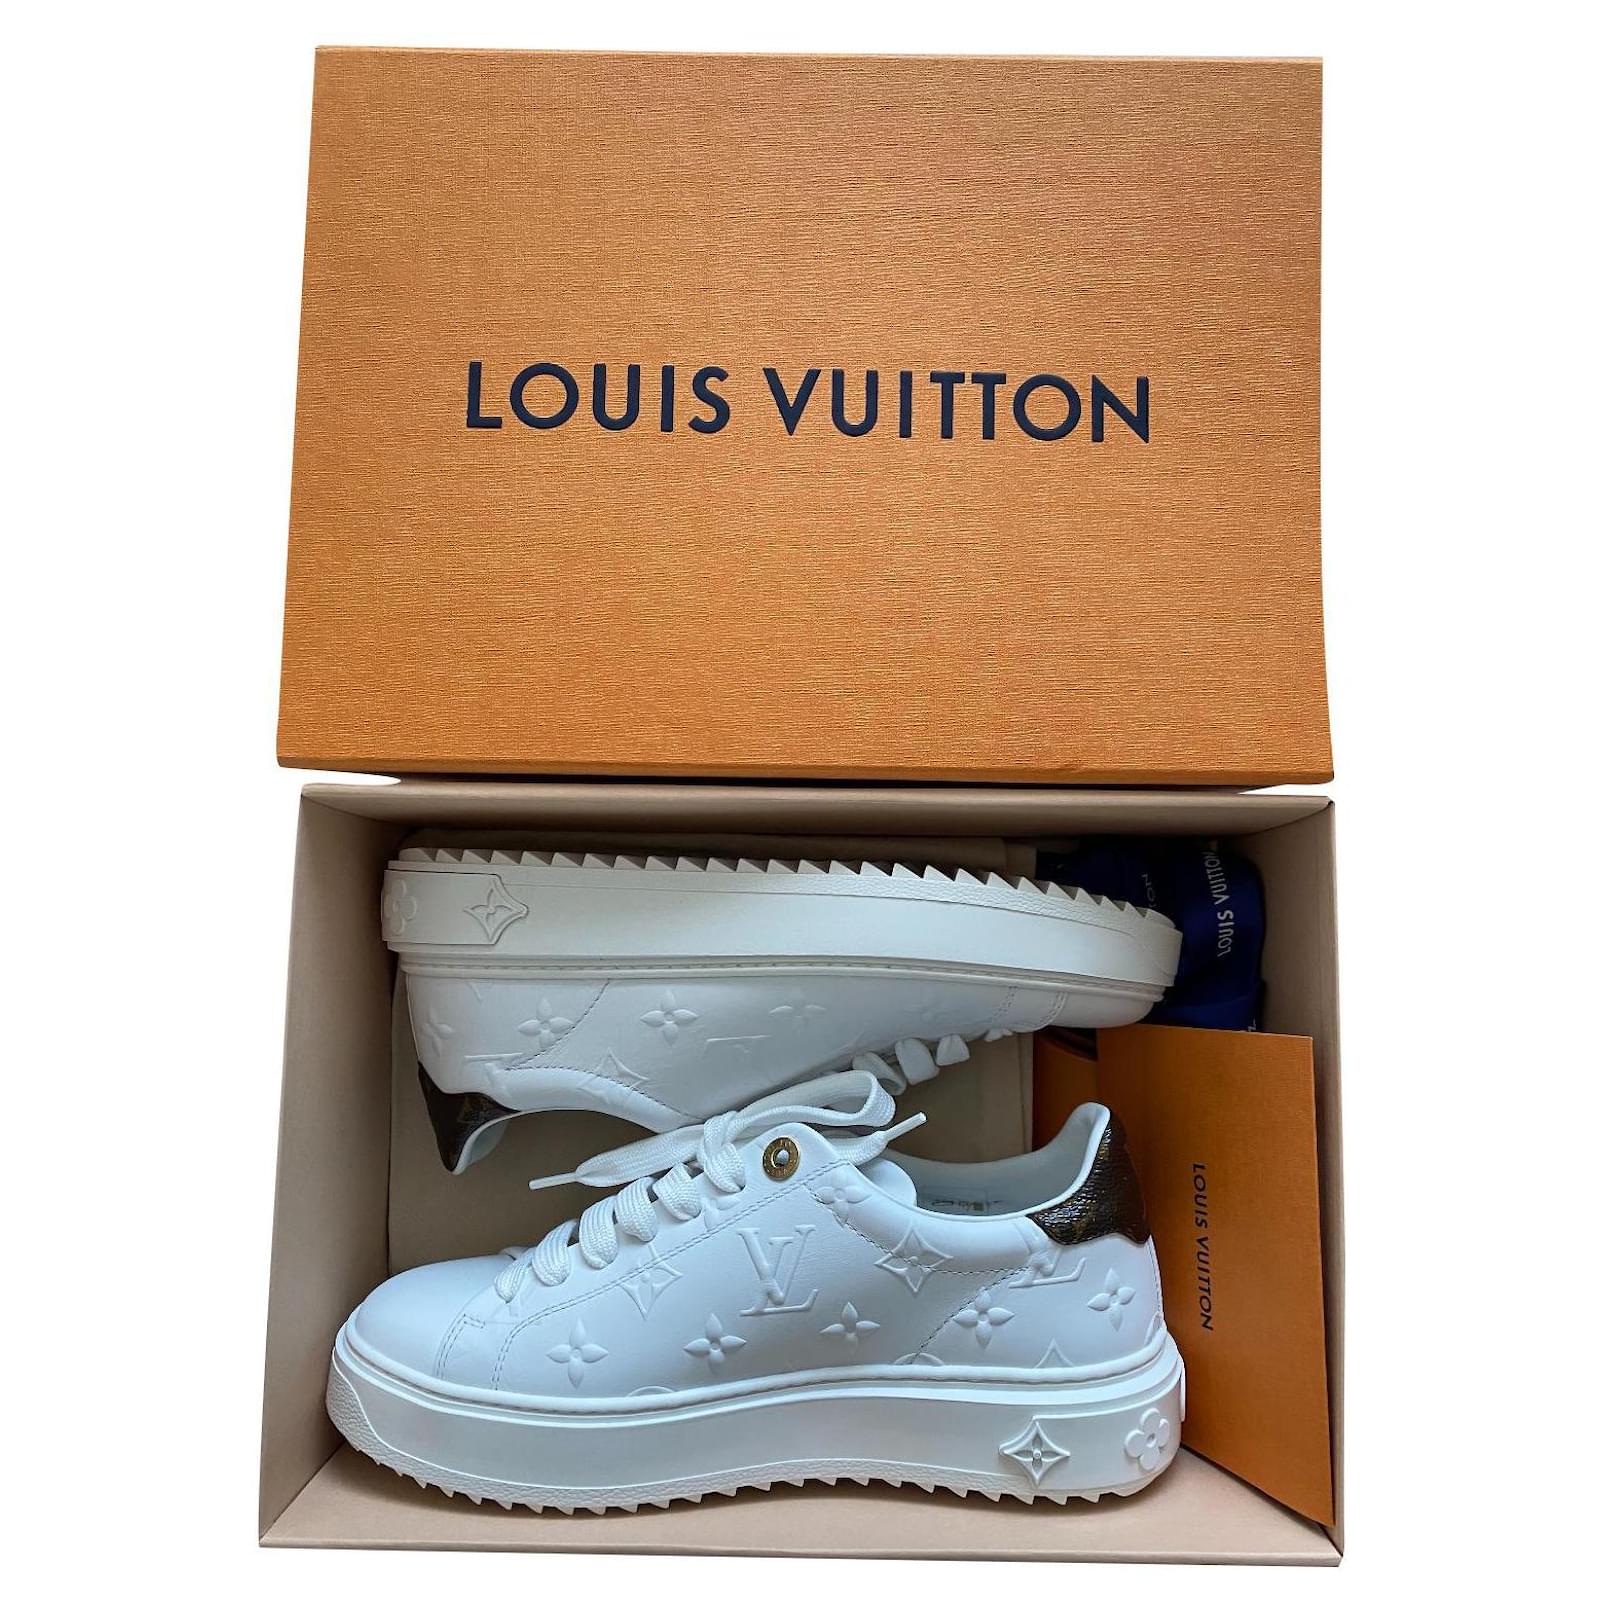 Louis Vuitton Low-Top Sneakers (1AAP6O, 1AAP6N, 1AAP6K 1AAP6L 1AAP6M,  1AAP6H 1AAP6I 1AAP6J, 1AAP6D 1AAP6E 1AAP6F 1AAP6G, 1AAP69 1AAP6A 1AAP6B  1AAP6C)